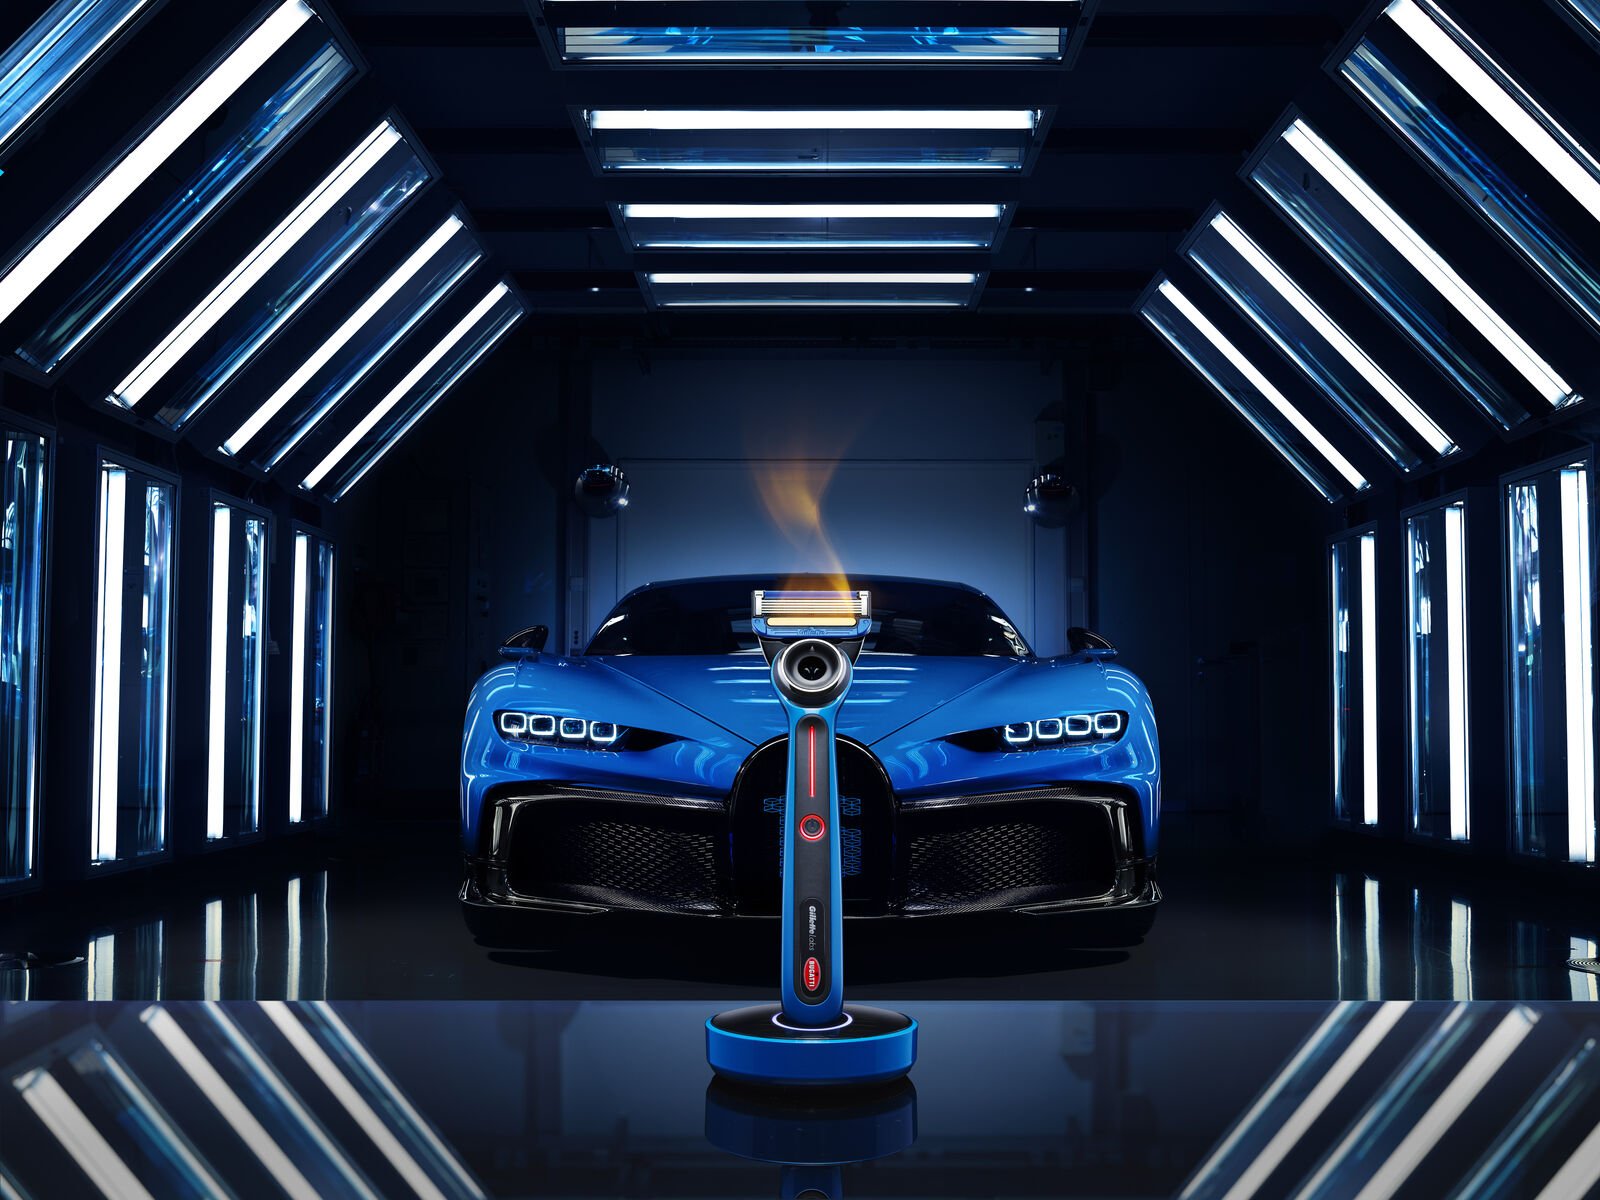 The GilletteLabs | Bugatti Special Edition Heated Razor